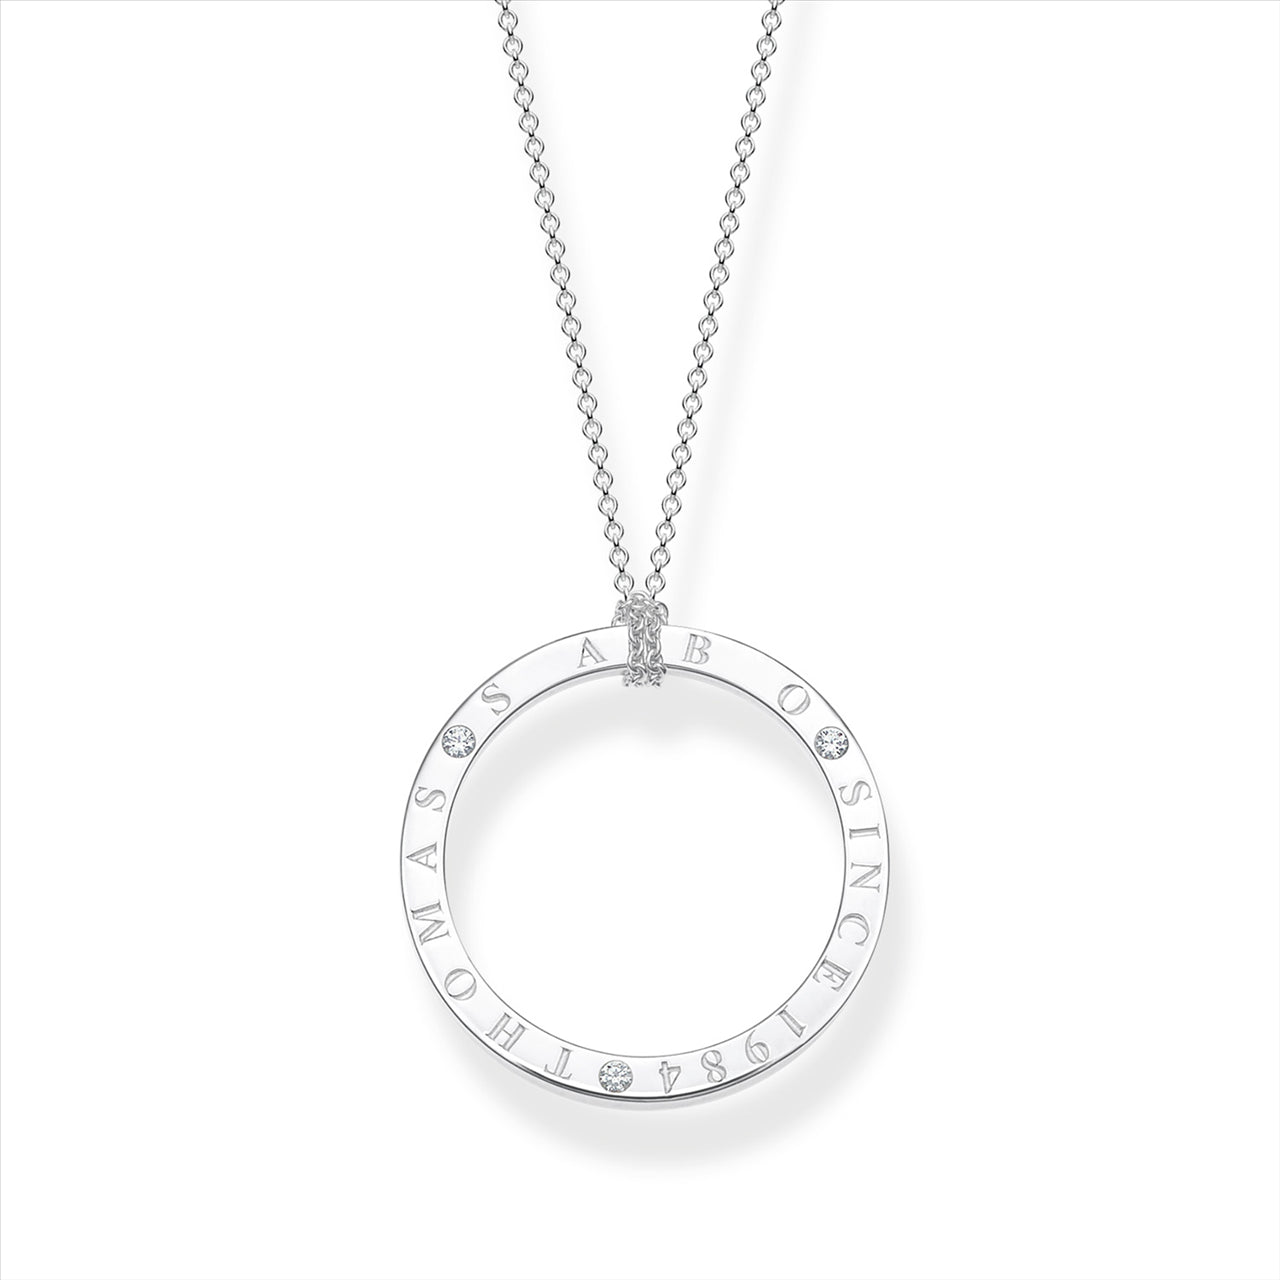 Thomas Sabo Sparkling Circles Necklace.